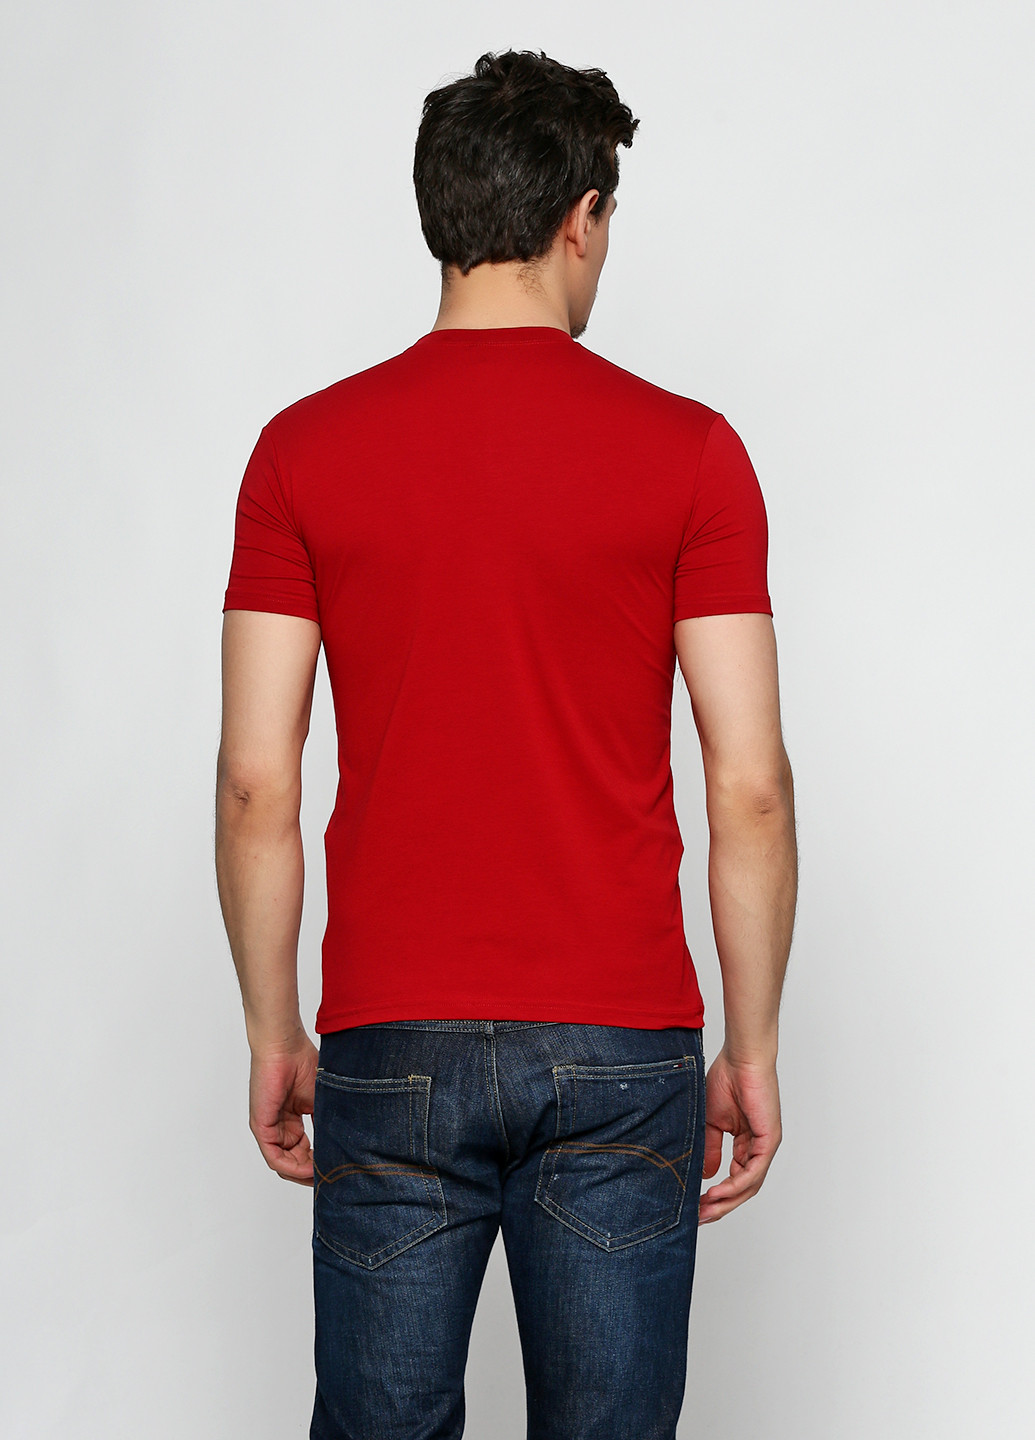 Красная футболка с коротким рукавом Romix